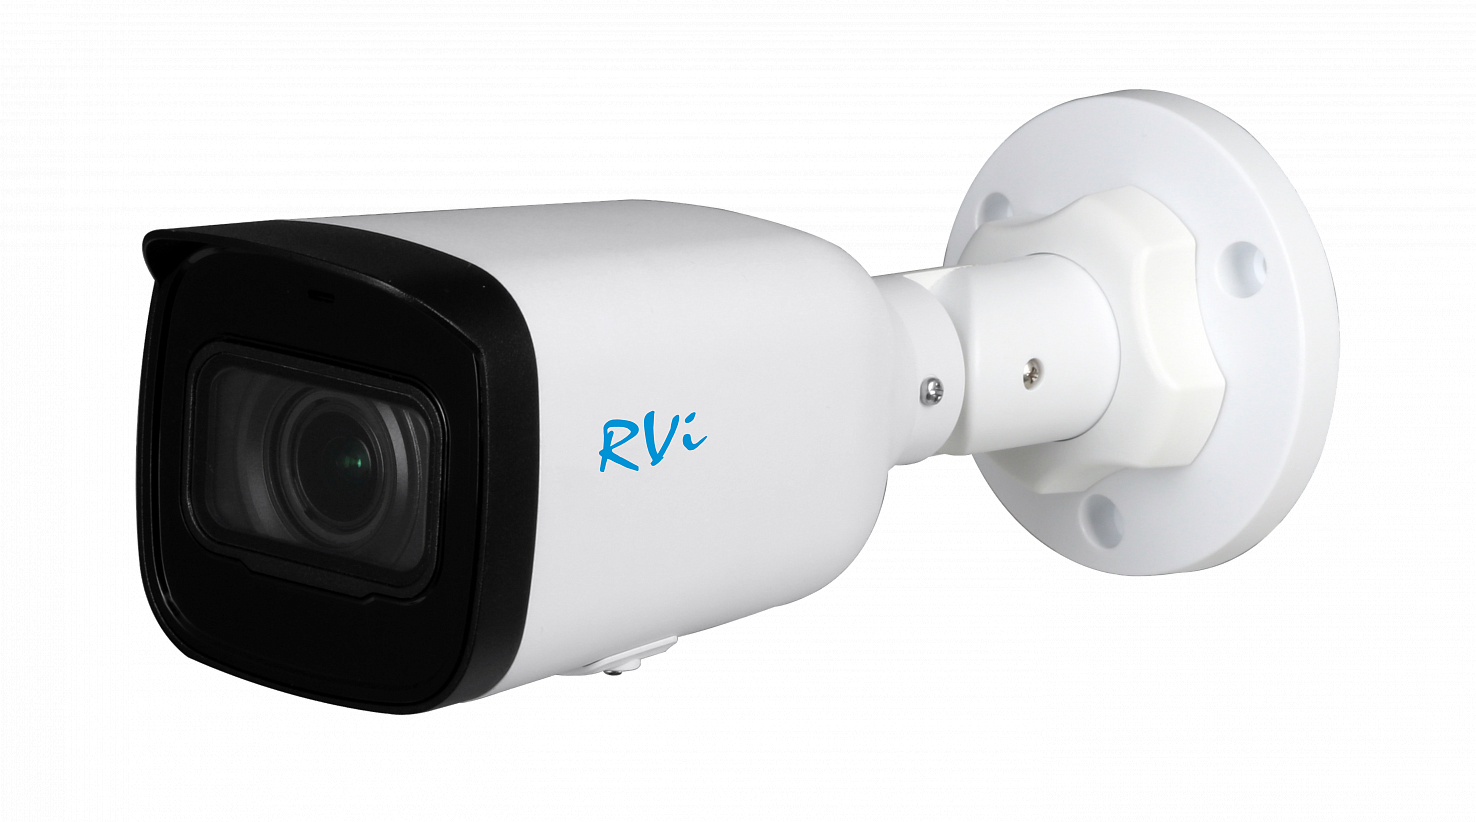 RVi-1NCT4143-P (2.8-12) white - купить в интернет магазине с доставкой, цены, описание, характеристики, отзывы